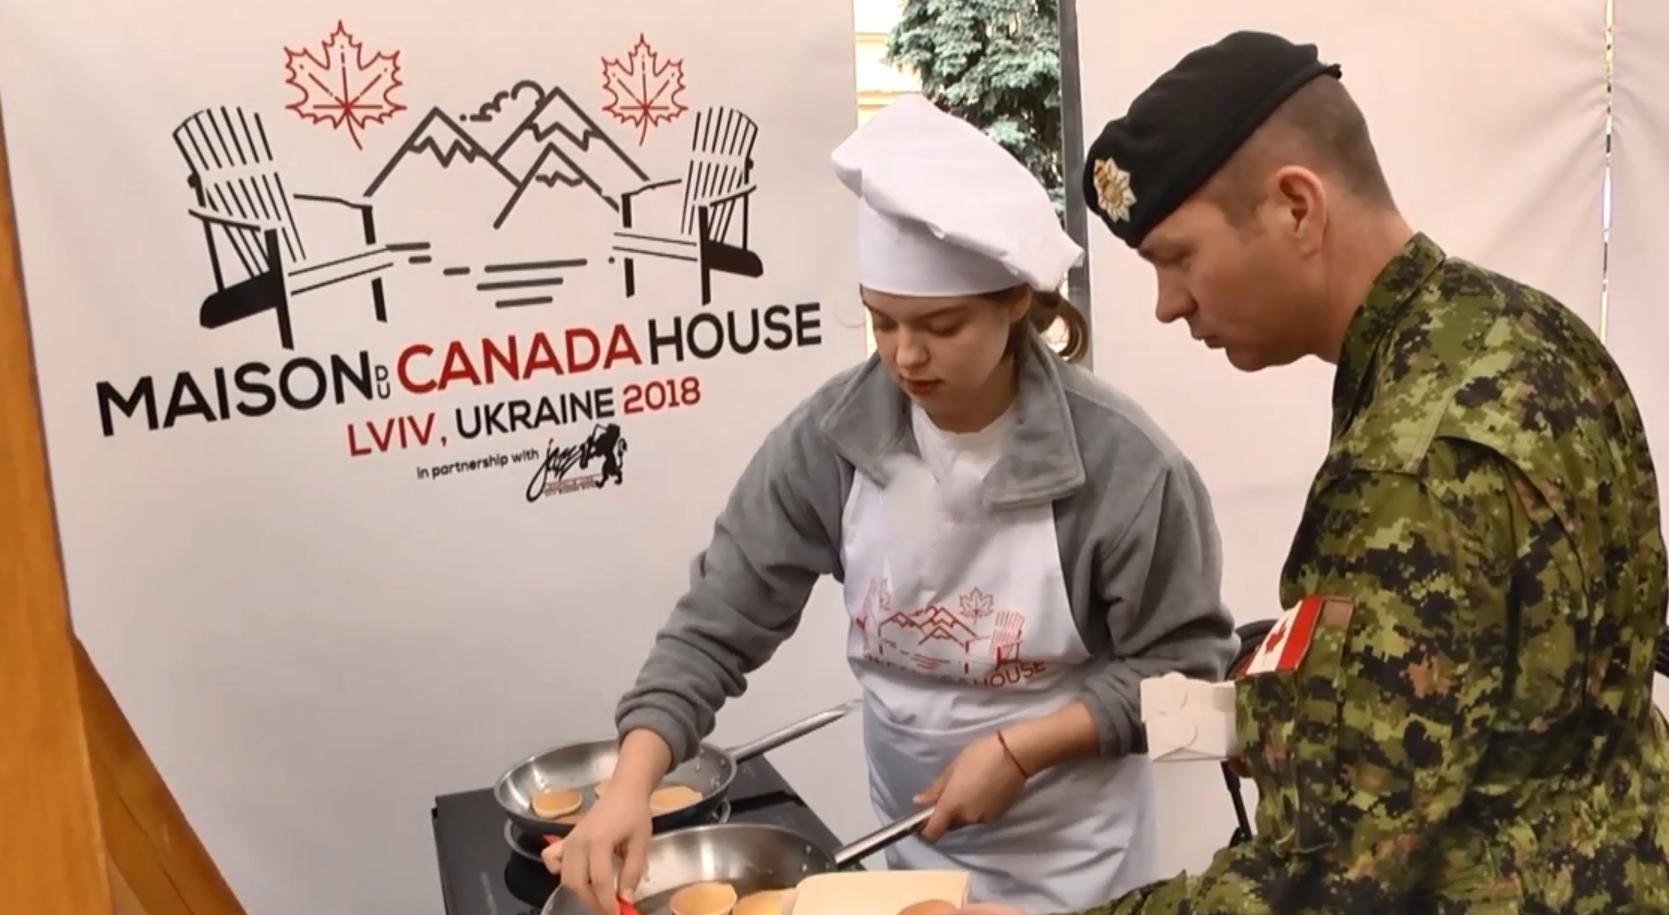 Во Львове канадские военные раздают панкейки под открытым небом